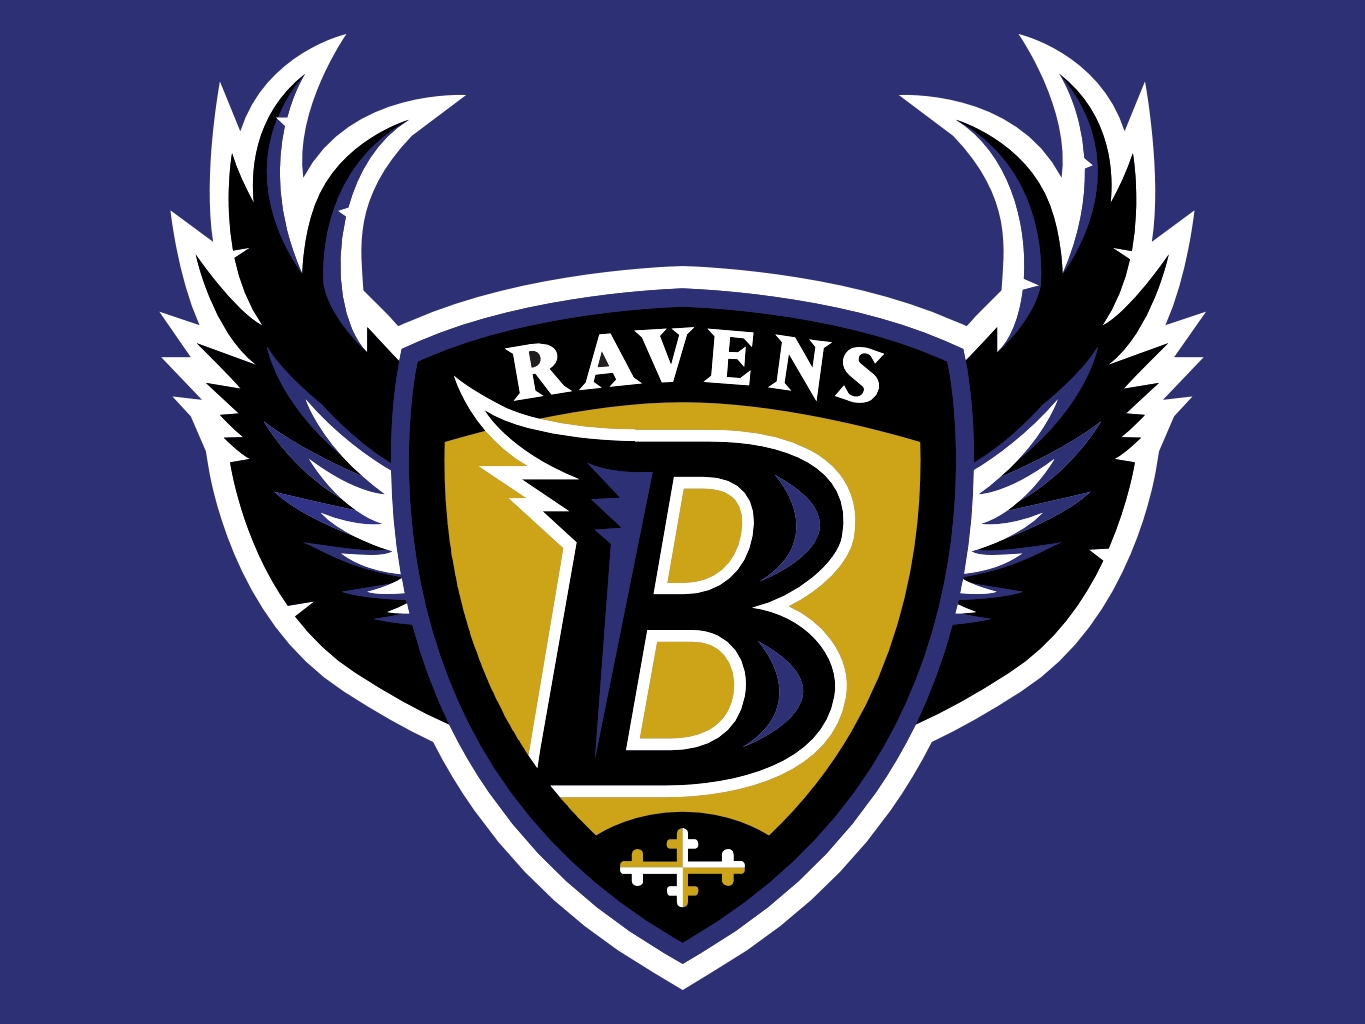 My Logo Pictures: Baltimore Ravens Logos